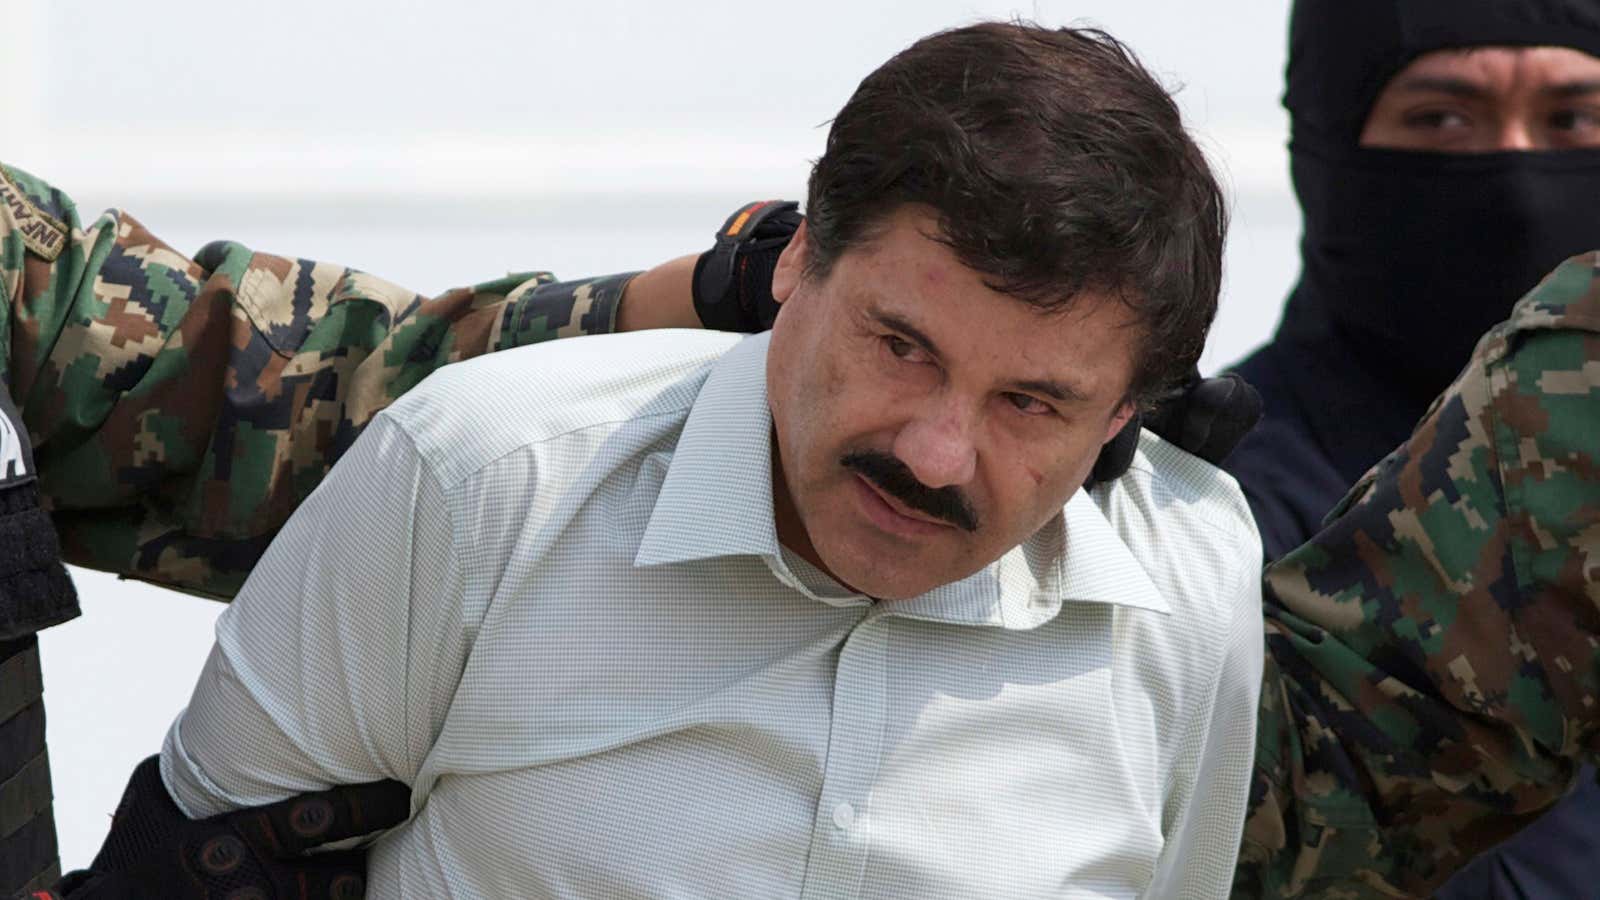 El Chapo’s capture in 2014.